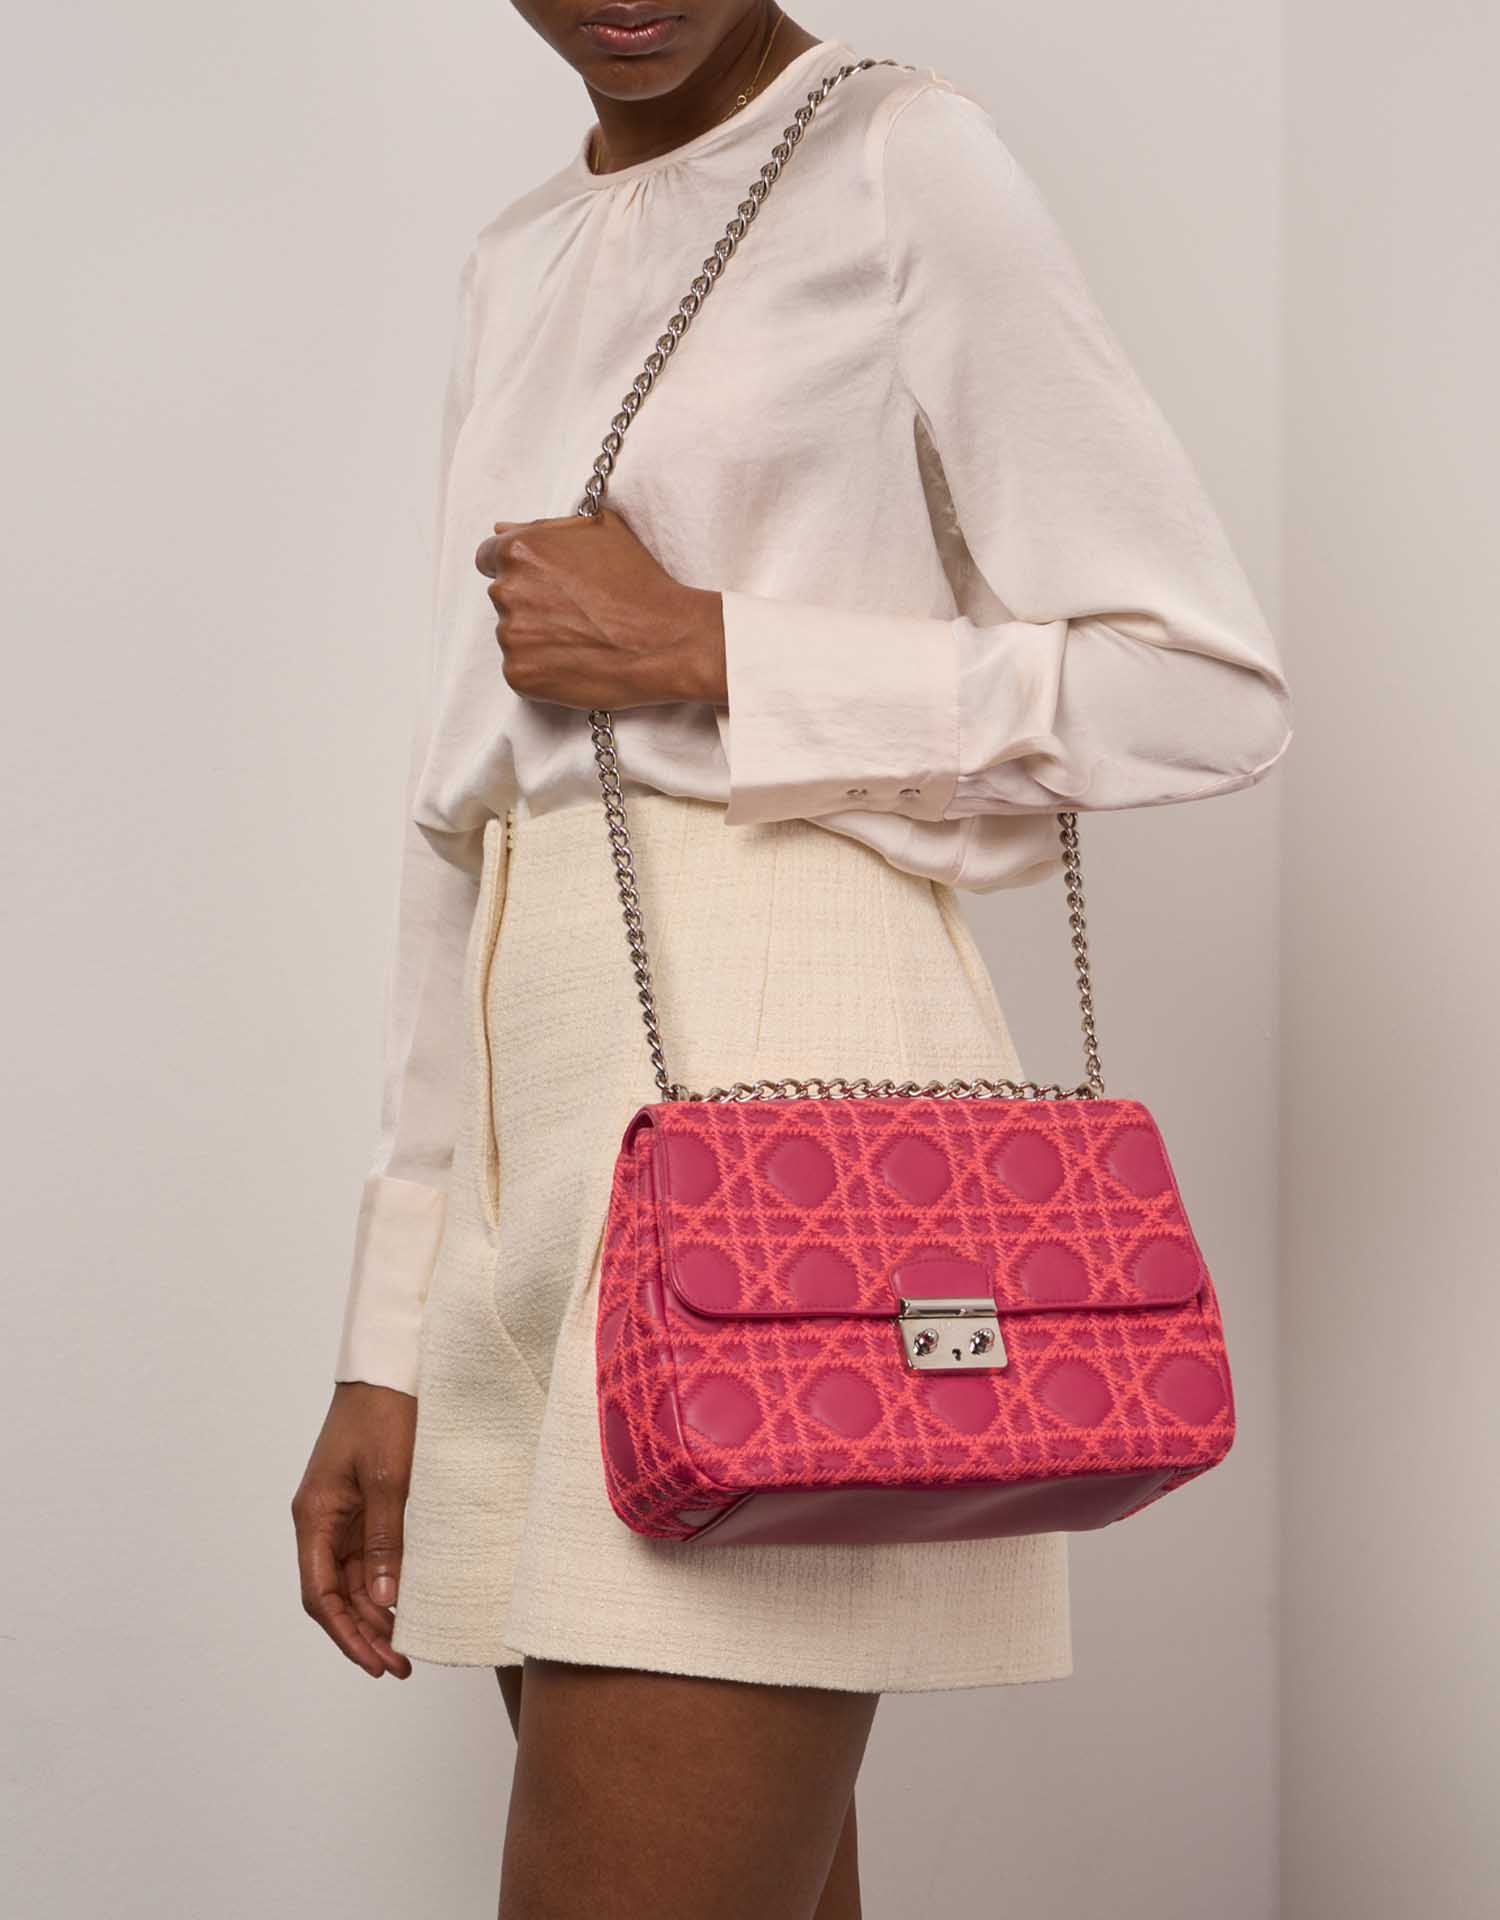 Gebrauchte Dior Tasche Miss Dior Medium Lammleder Pink Pink, Rose | Verkaufen Sie Ihre Designer-Tasche auf Saclab.com